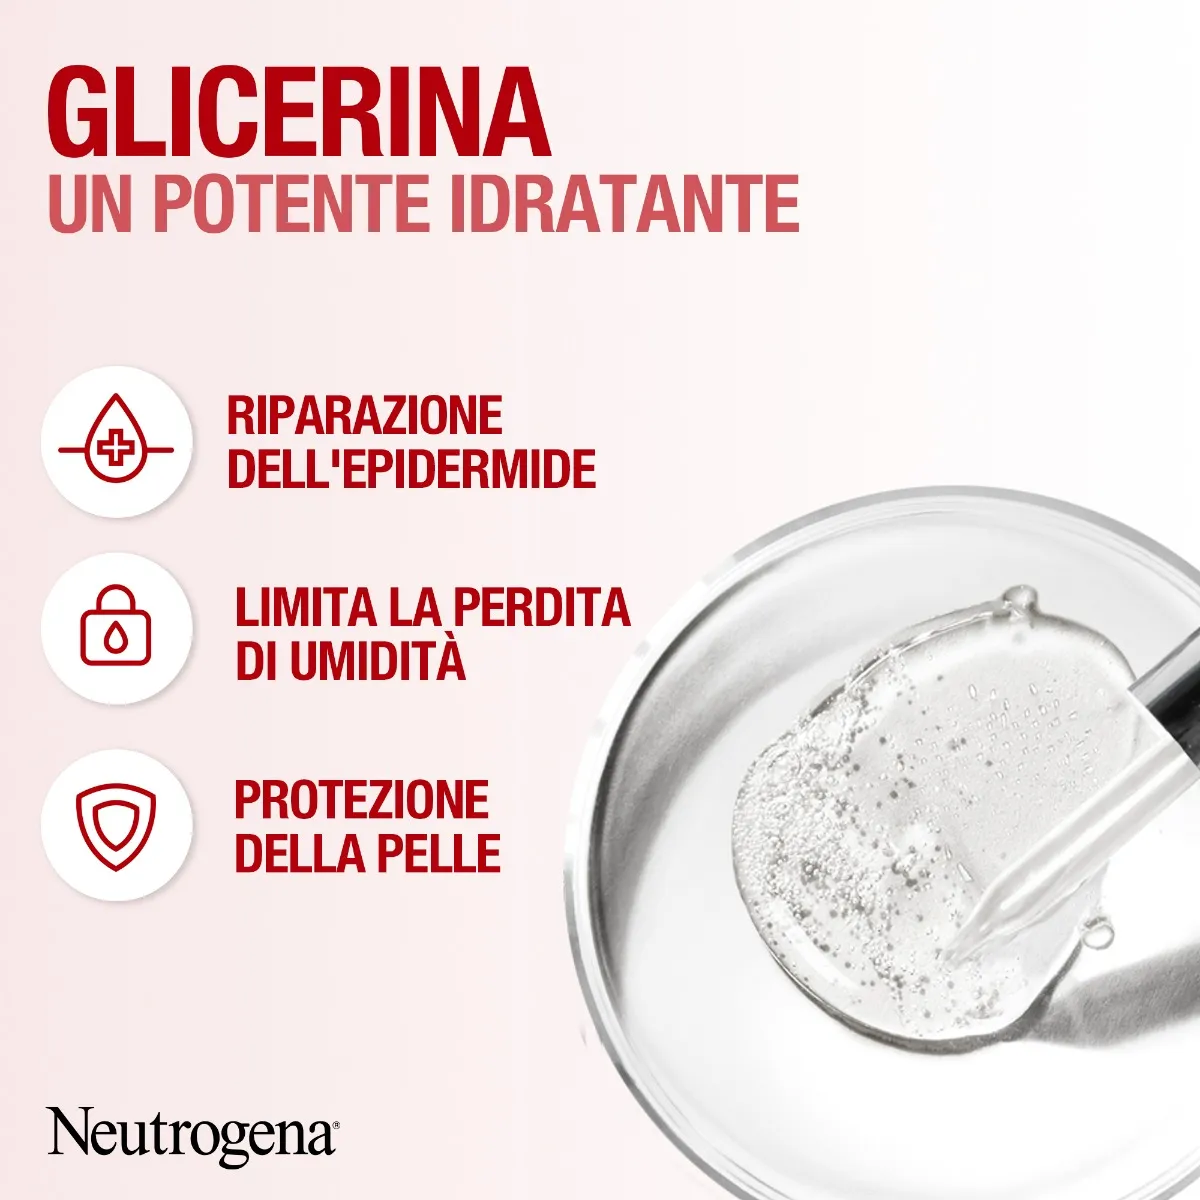 Neutrogena Crema Mani Idratante Senza Profumo 75 ml Idrata Mani Secche per 24 Ore